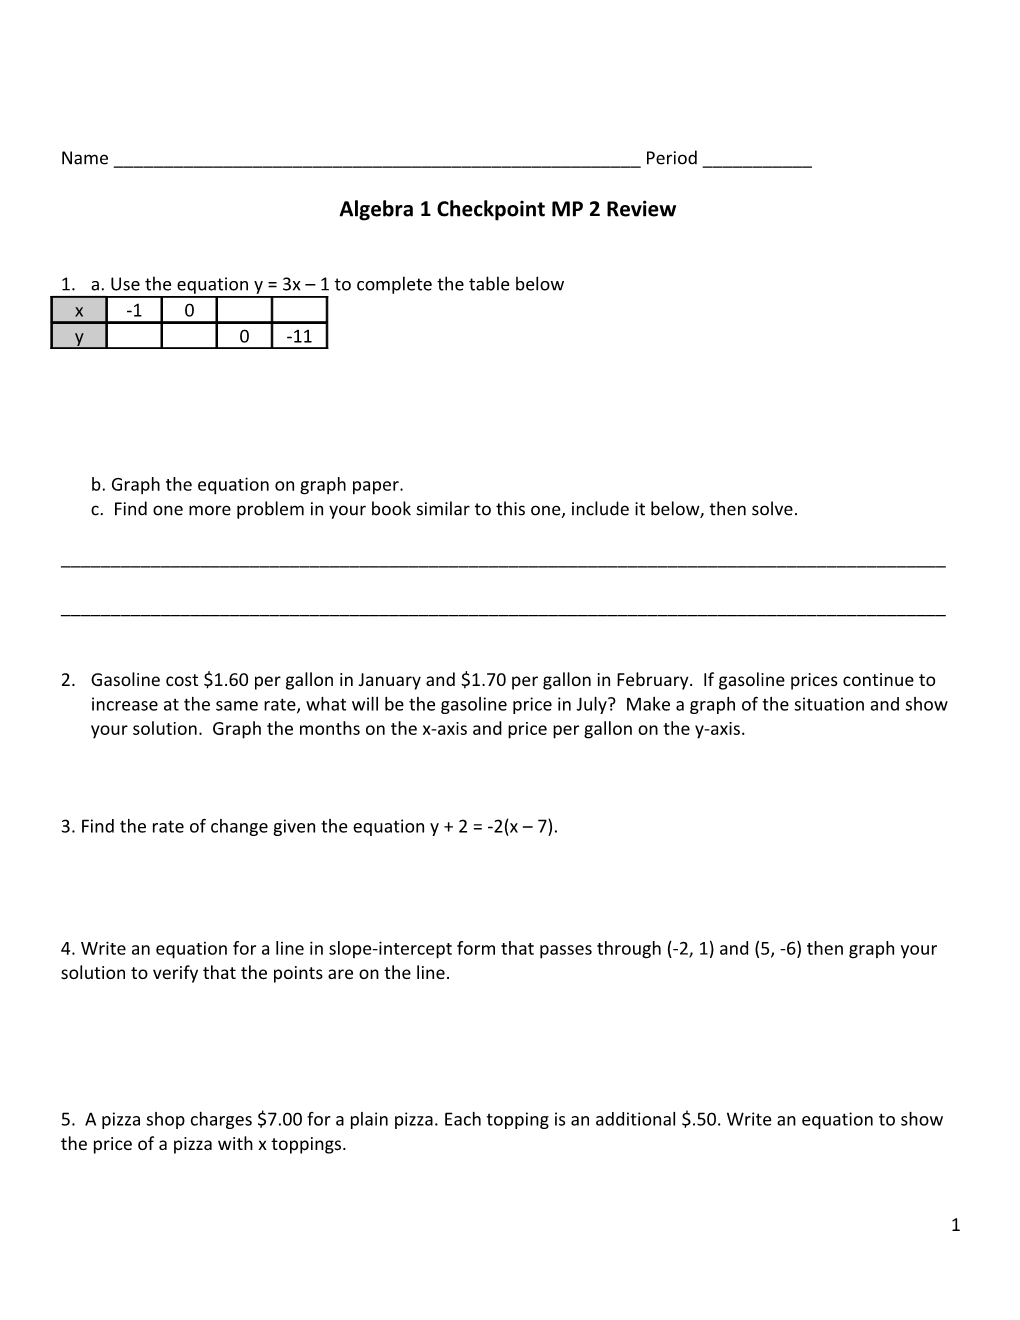 Algebra 1 Checkpoint MP 2 Review